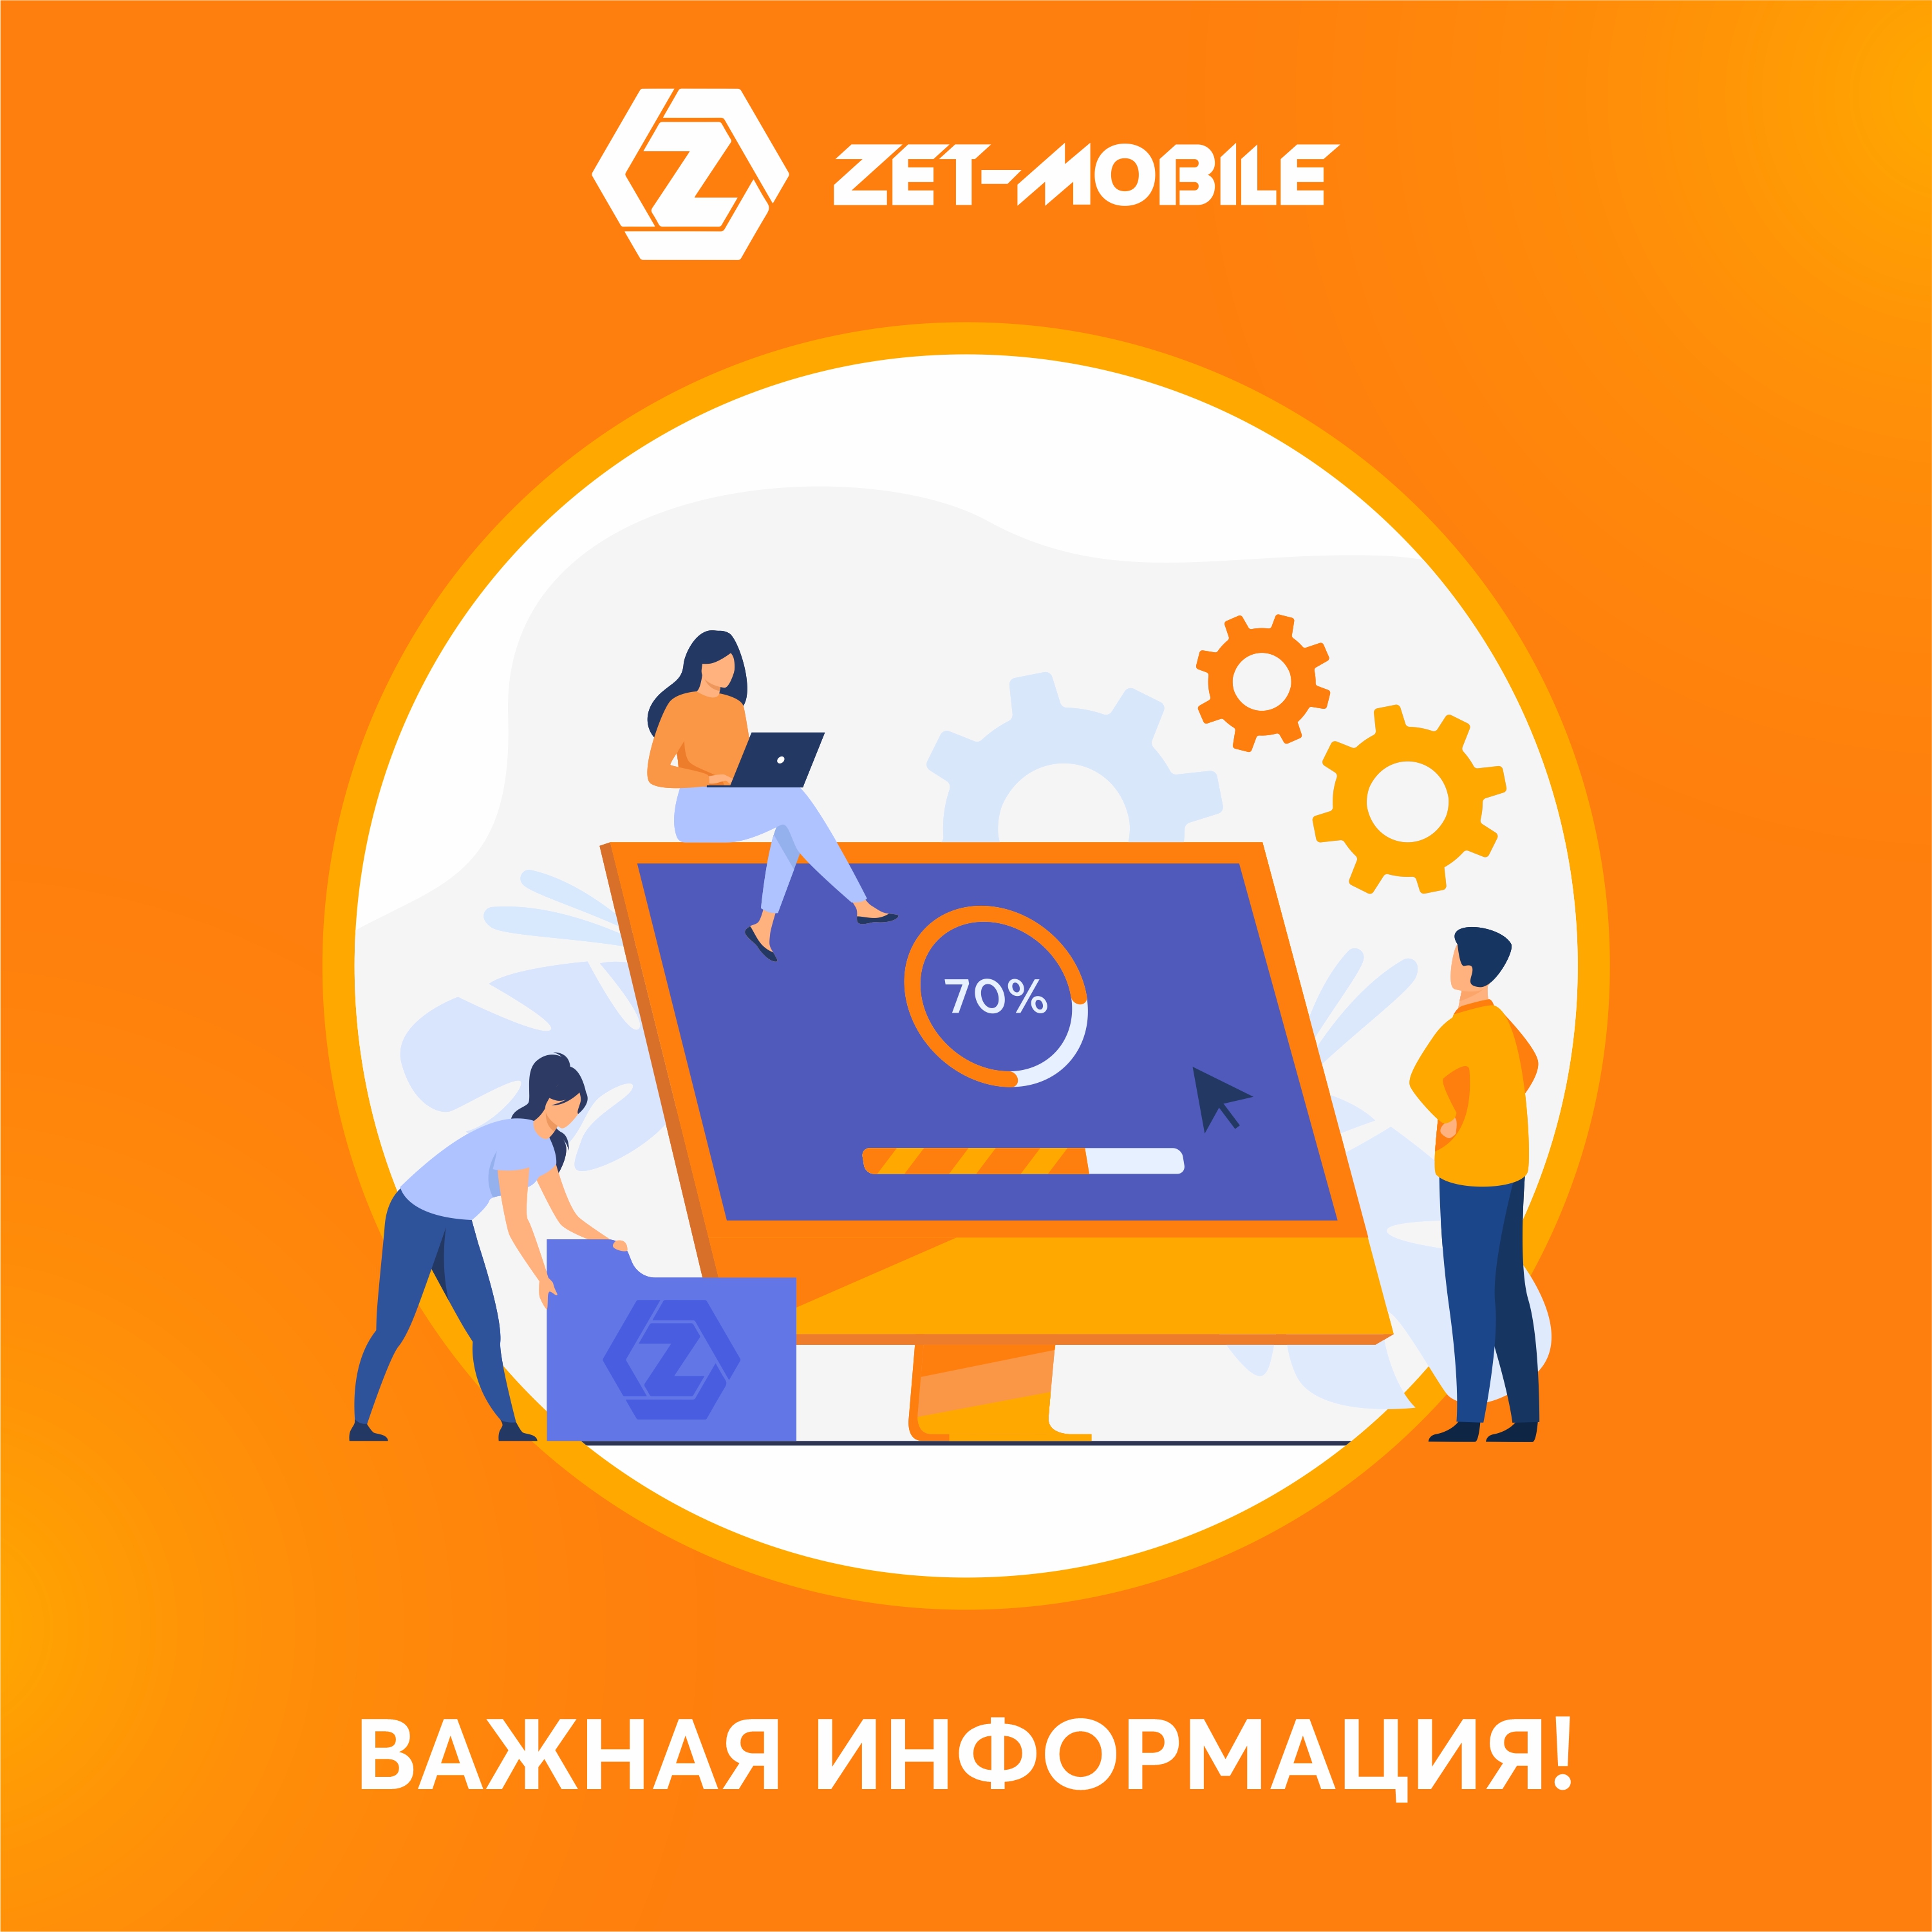 Новые правила: с 1 мая ZET-MOBILE меняет условия услуги «Трансфер»